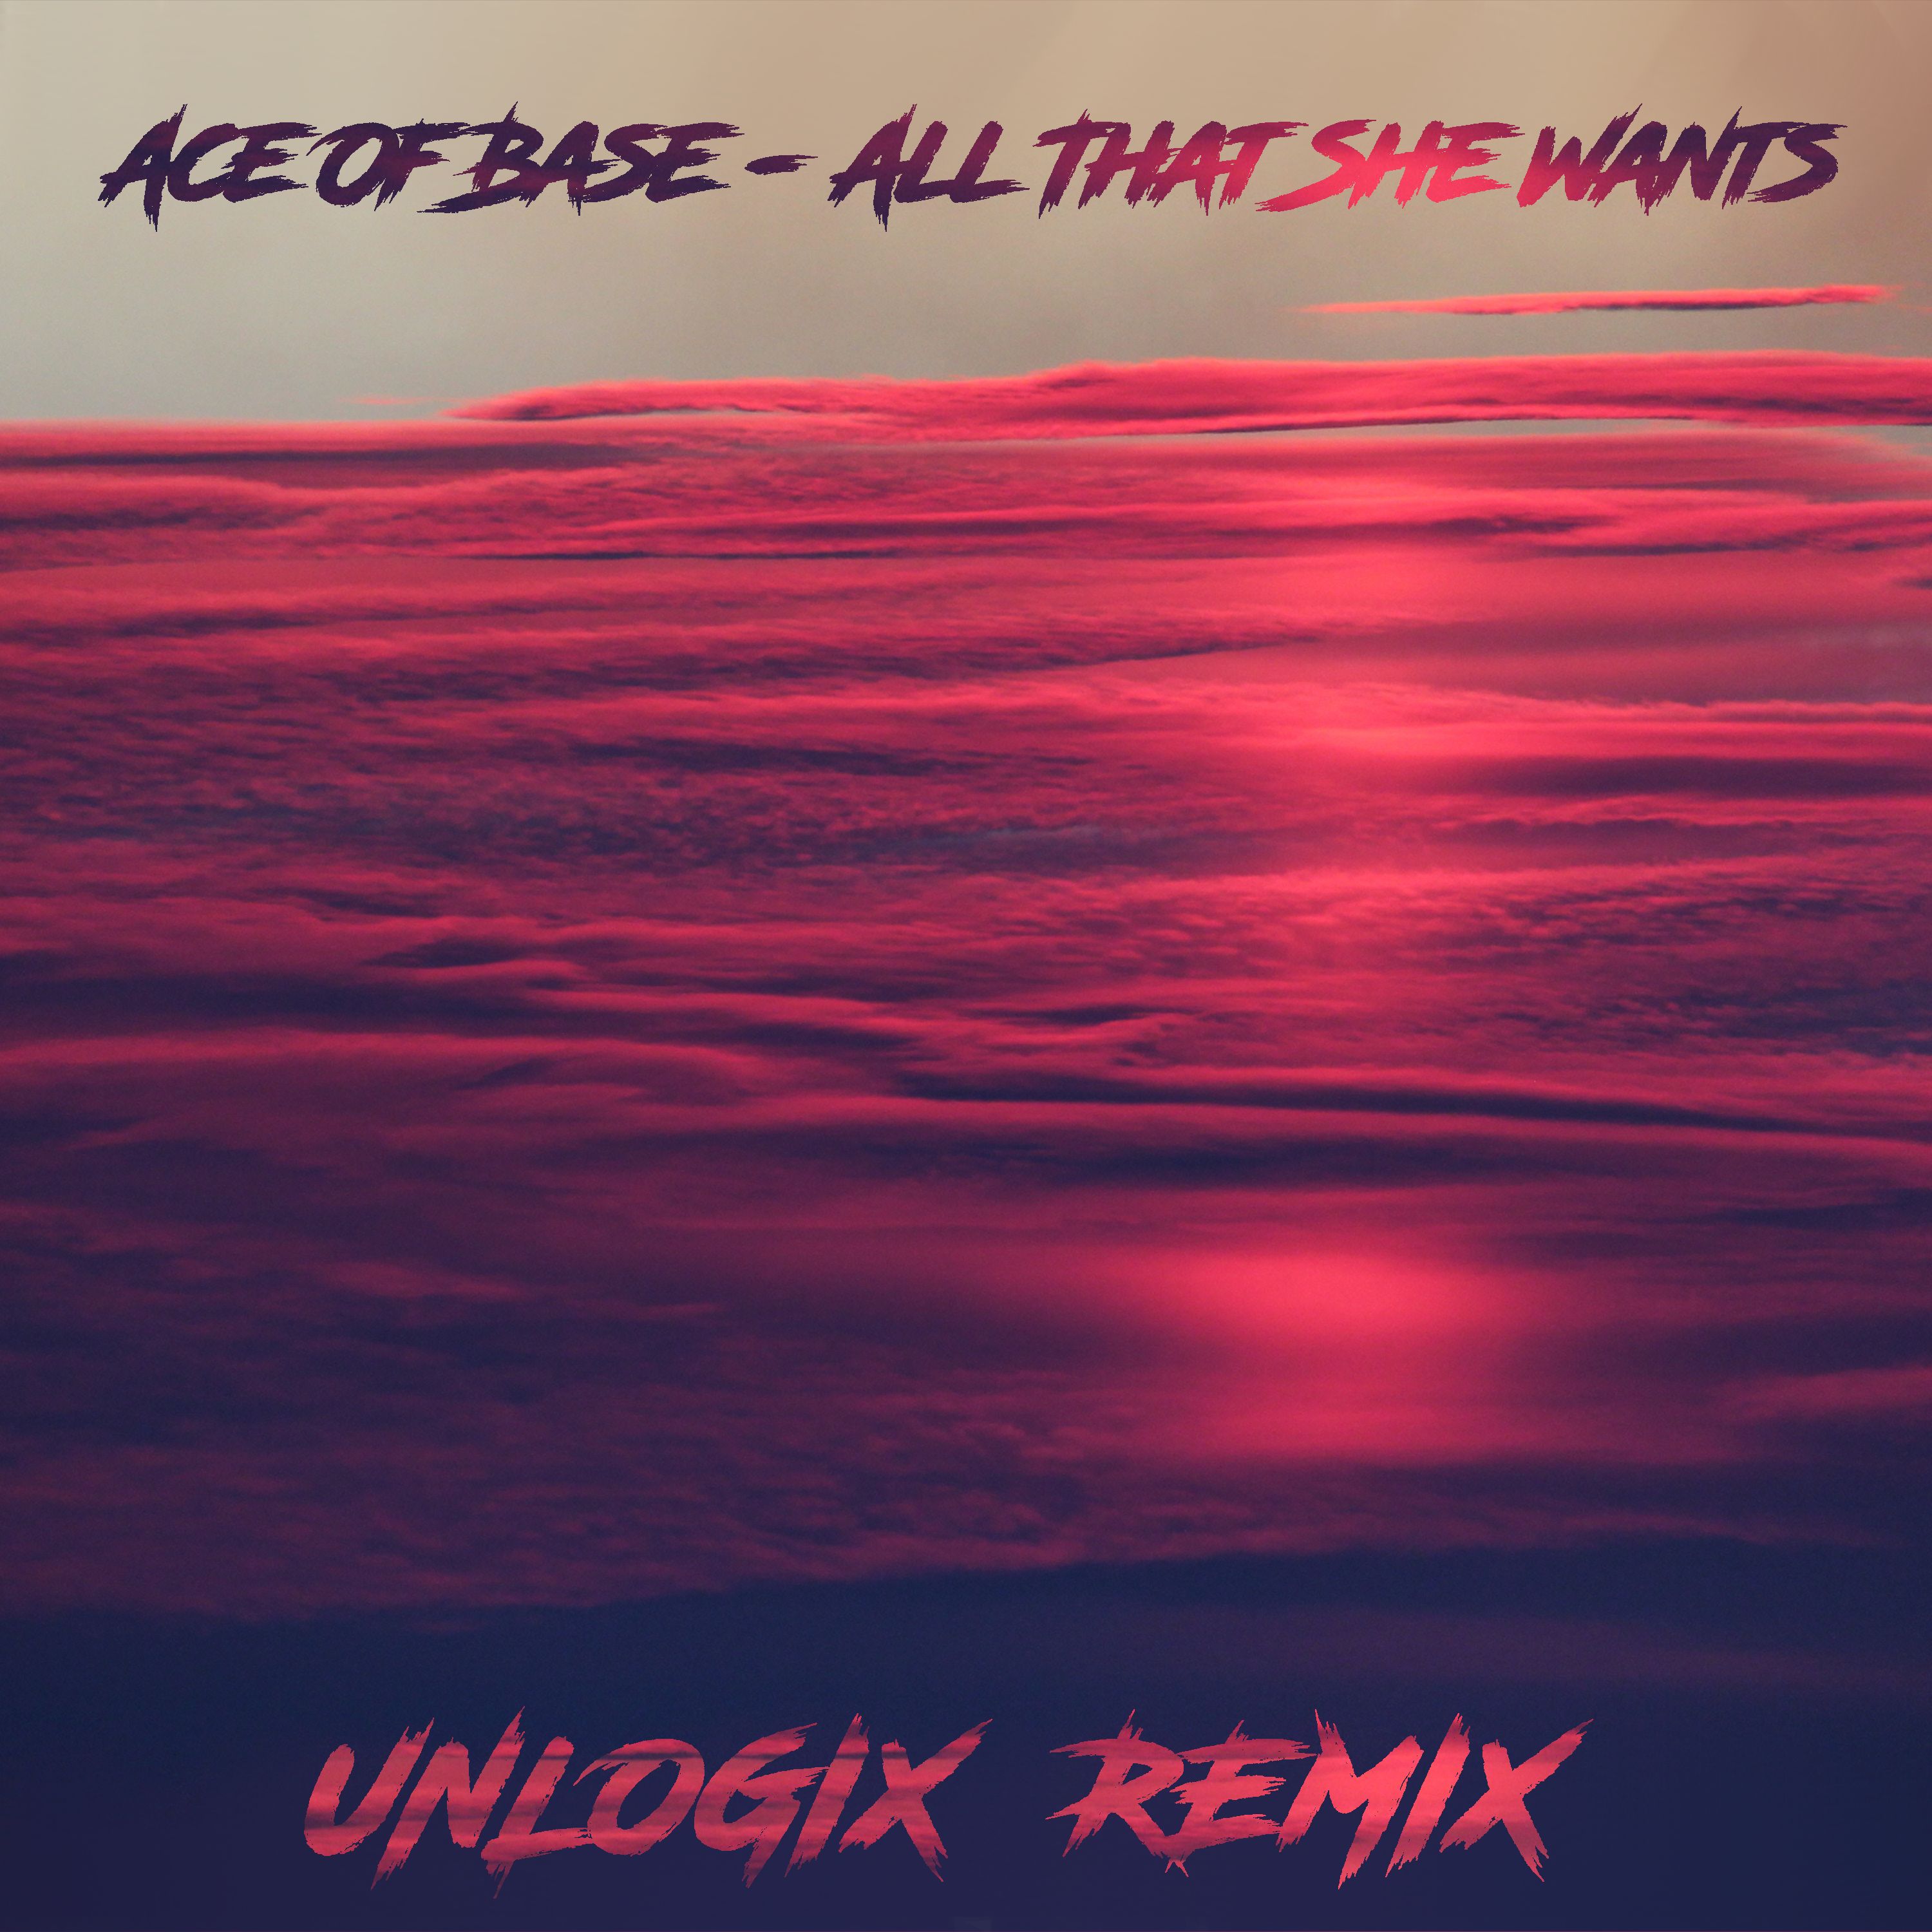 ဒေါင်းလုပ် Ace Of Base - All That She Wants ( Unlogix Remix ) "FREE DOWNLOAD"